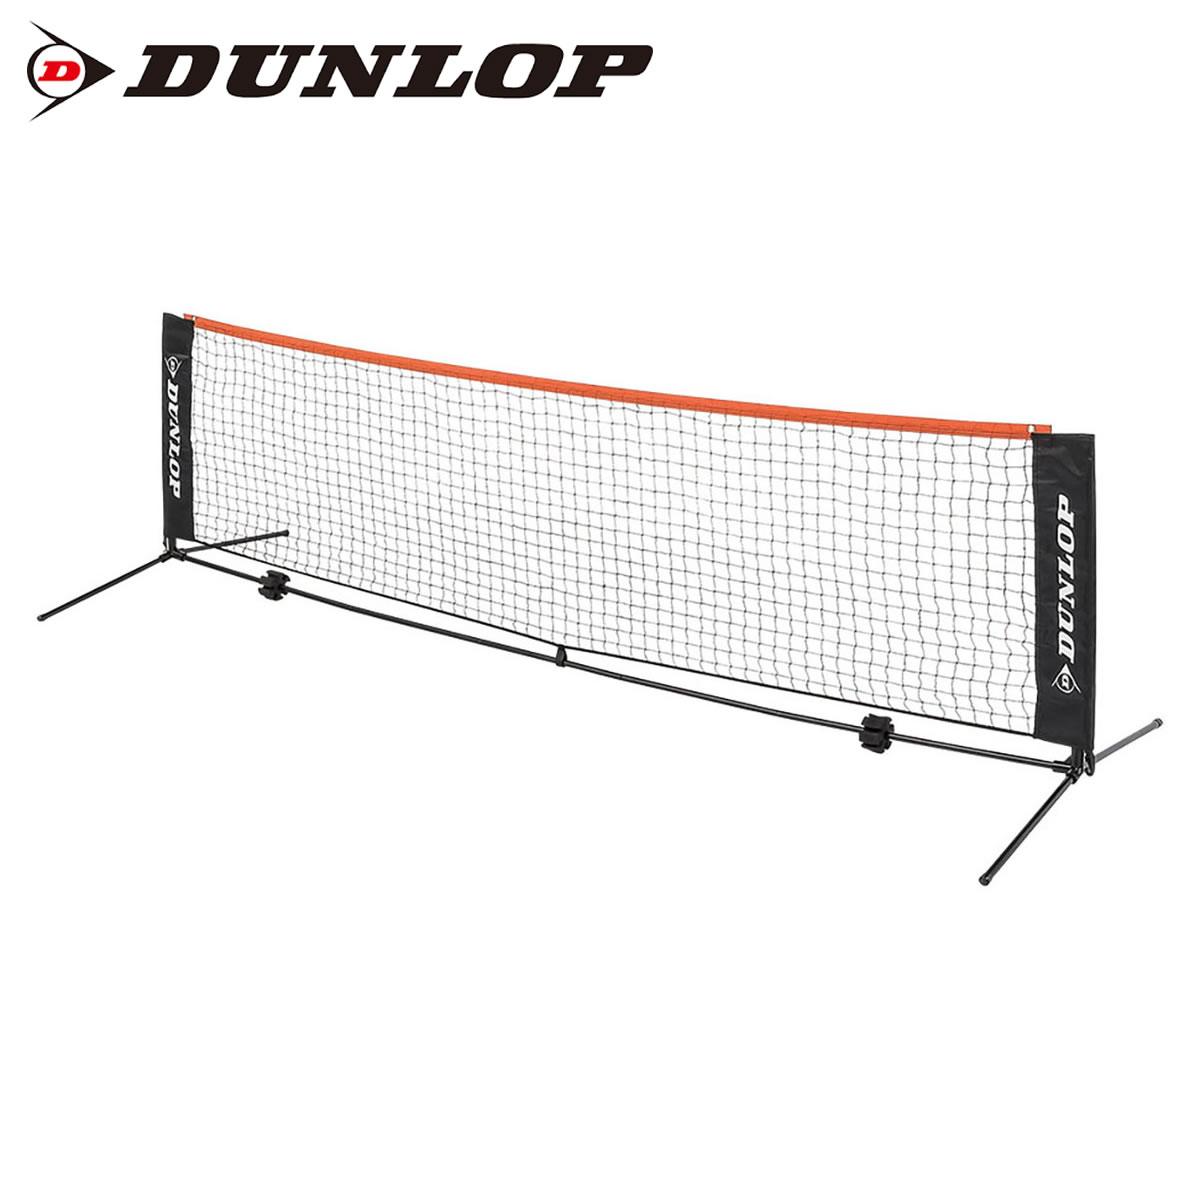 DUNLOP ST8000 ネット・ポストセット(3mタイプ) テニスネット 2020年春夏モデル ダンロップ